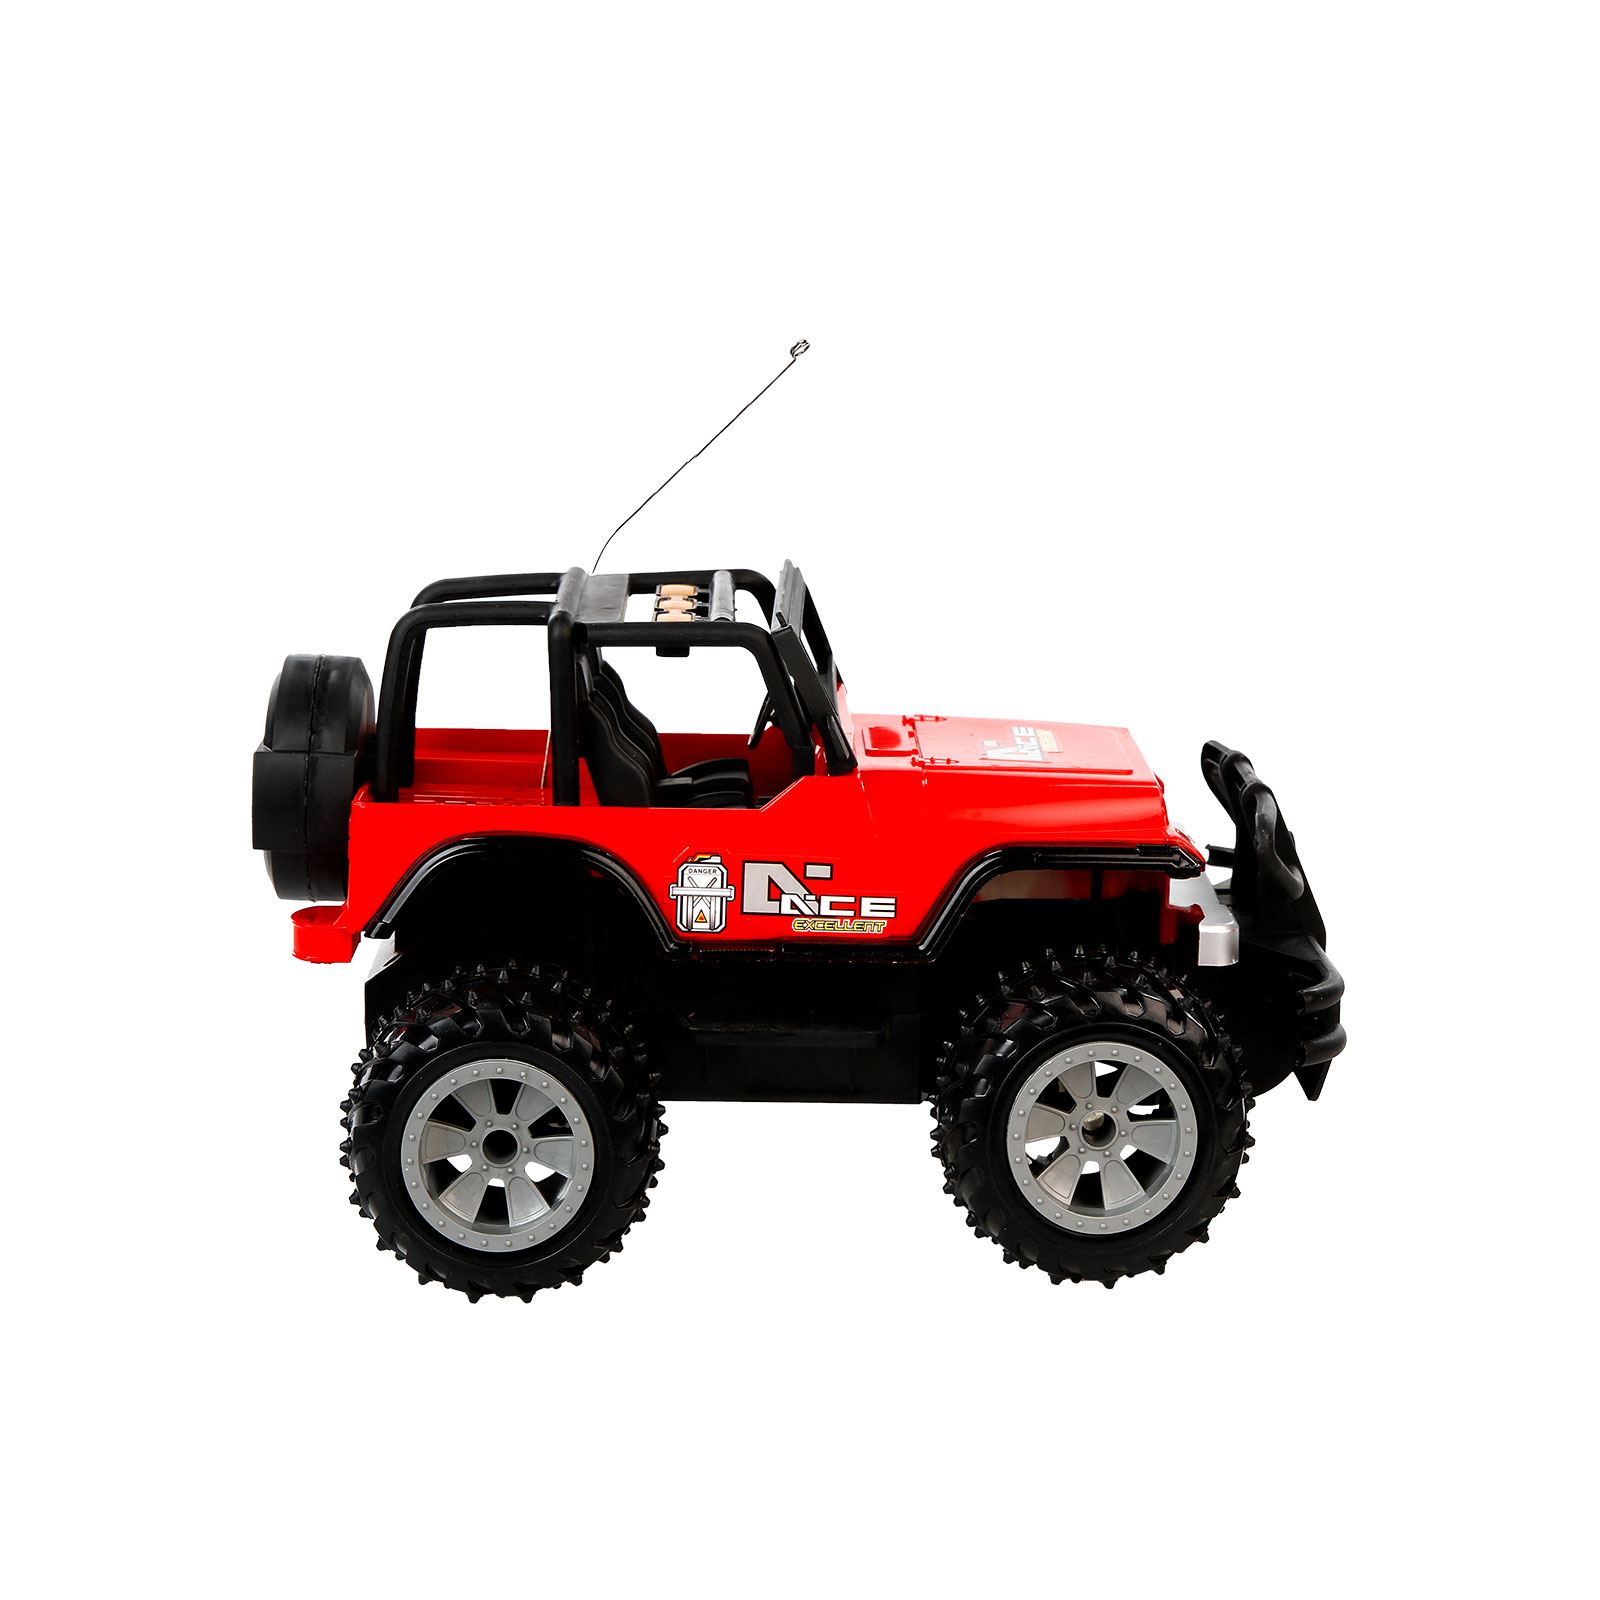 Can Oyuncak Uzaktan Kumandanlı Şarjlı Jeep Kırmızı